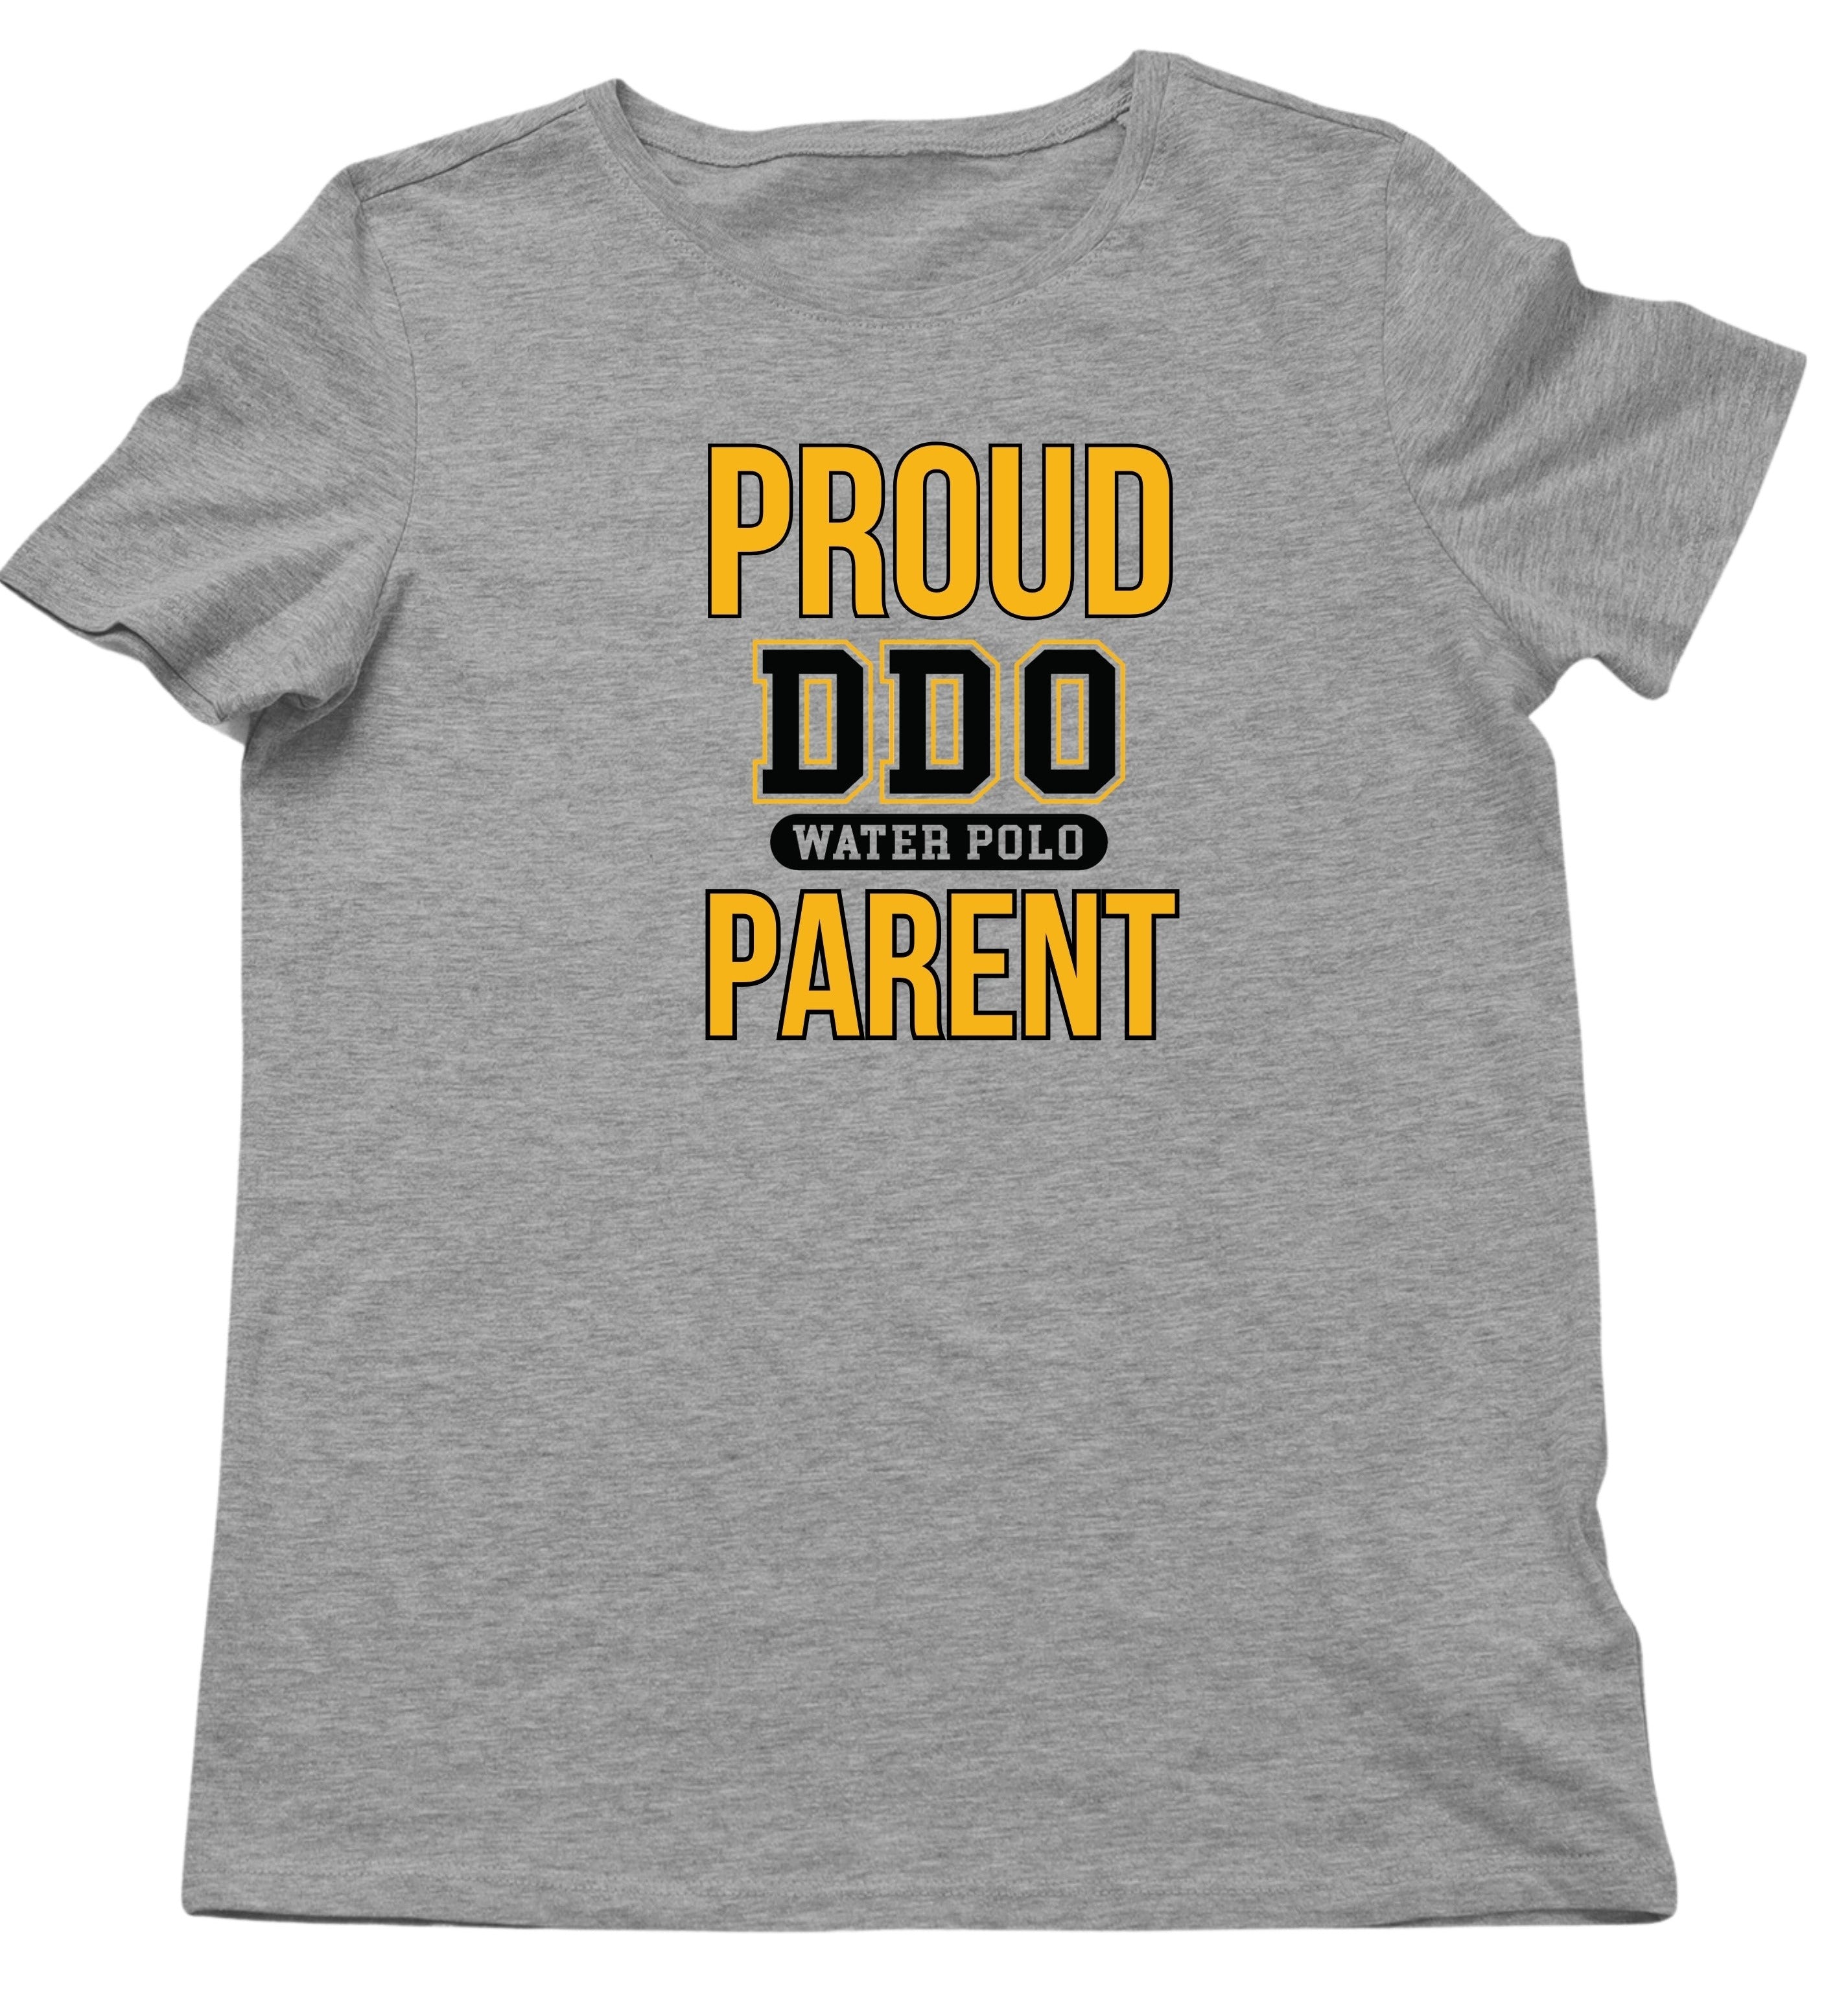 DDO Proud Parent T-shirt